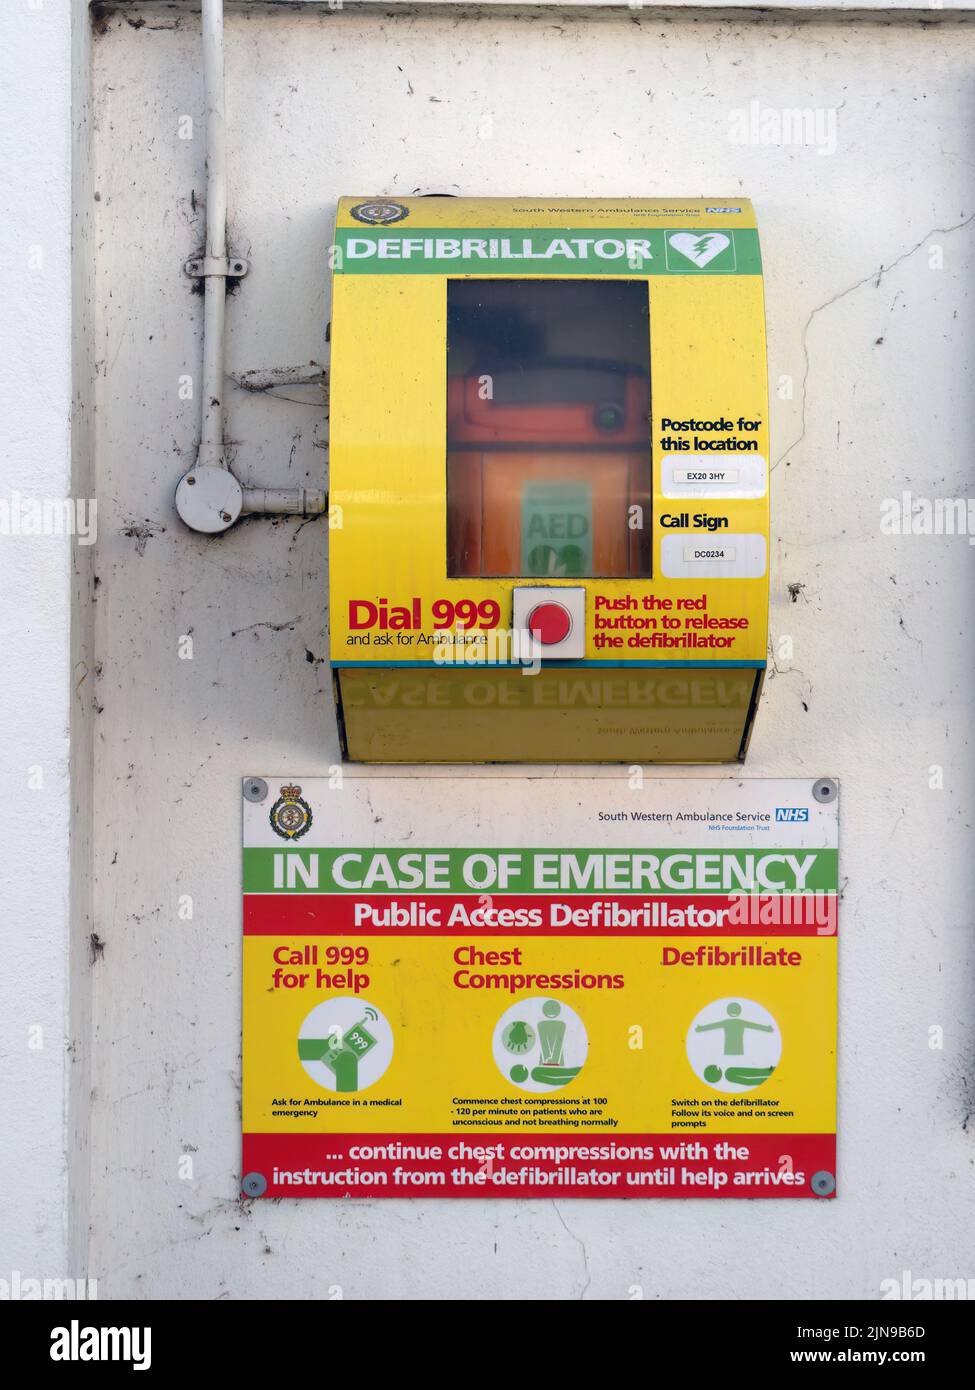 HATHERLEIGH, DEVON, ENGLAND - AUGUST 9 2022: Public access defibrillator box in town street. Stock Photo